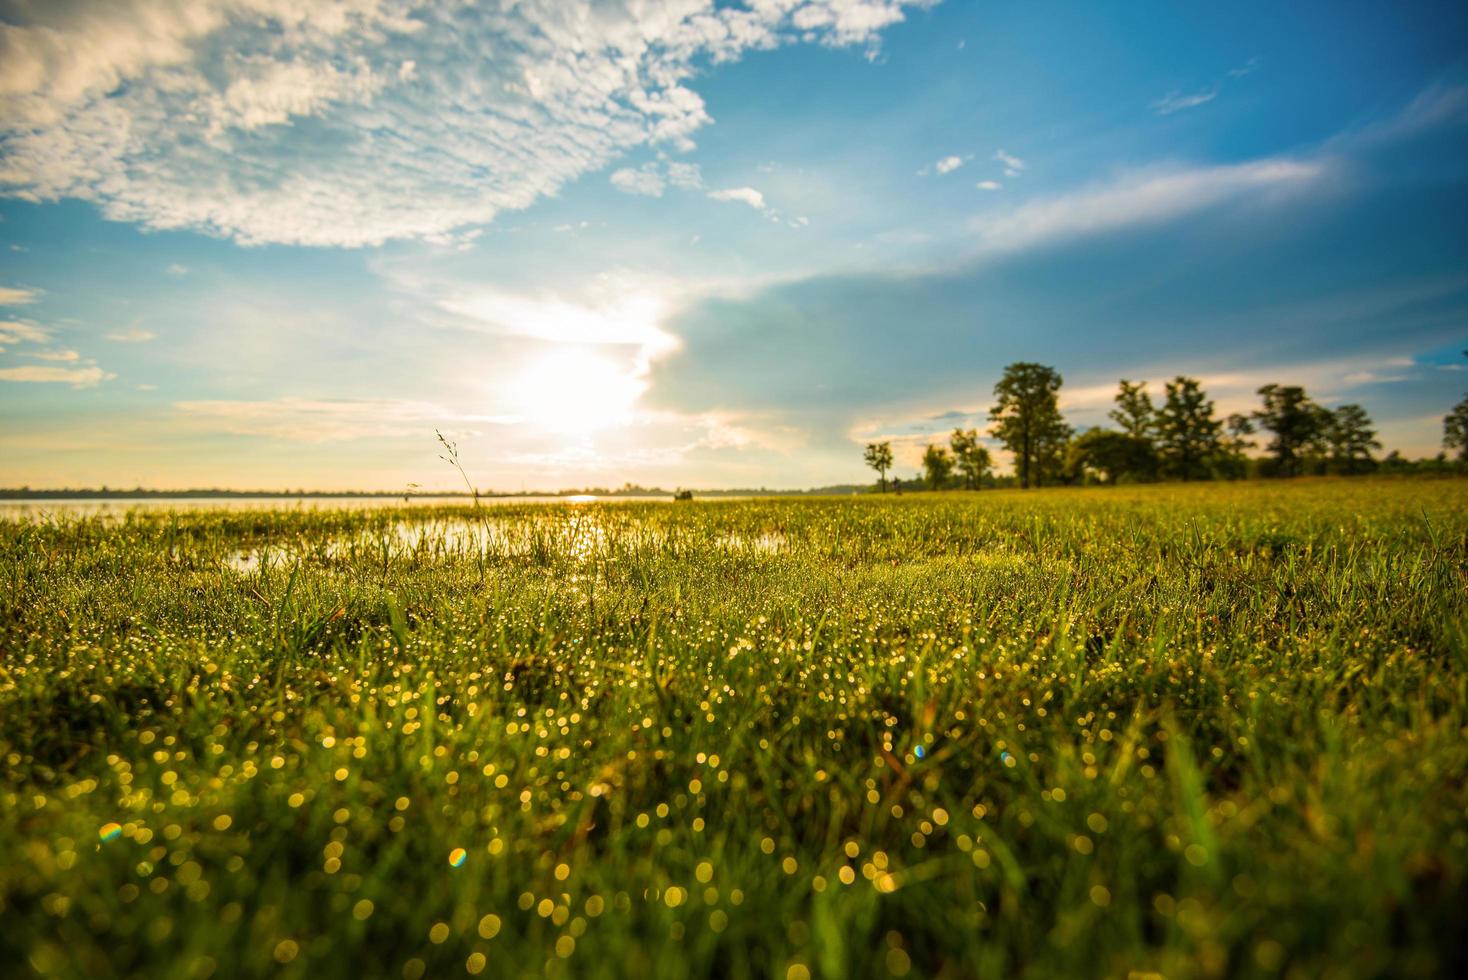 goccia d'acqua di rugiada sul prato verde dell'erba al mattino con la luce del sole giorno luminoso cielo blu sullo sfondo foto